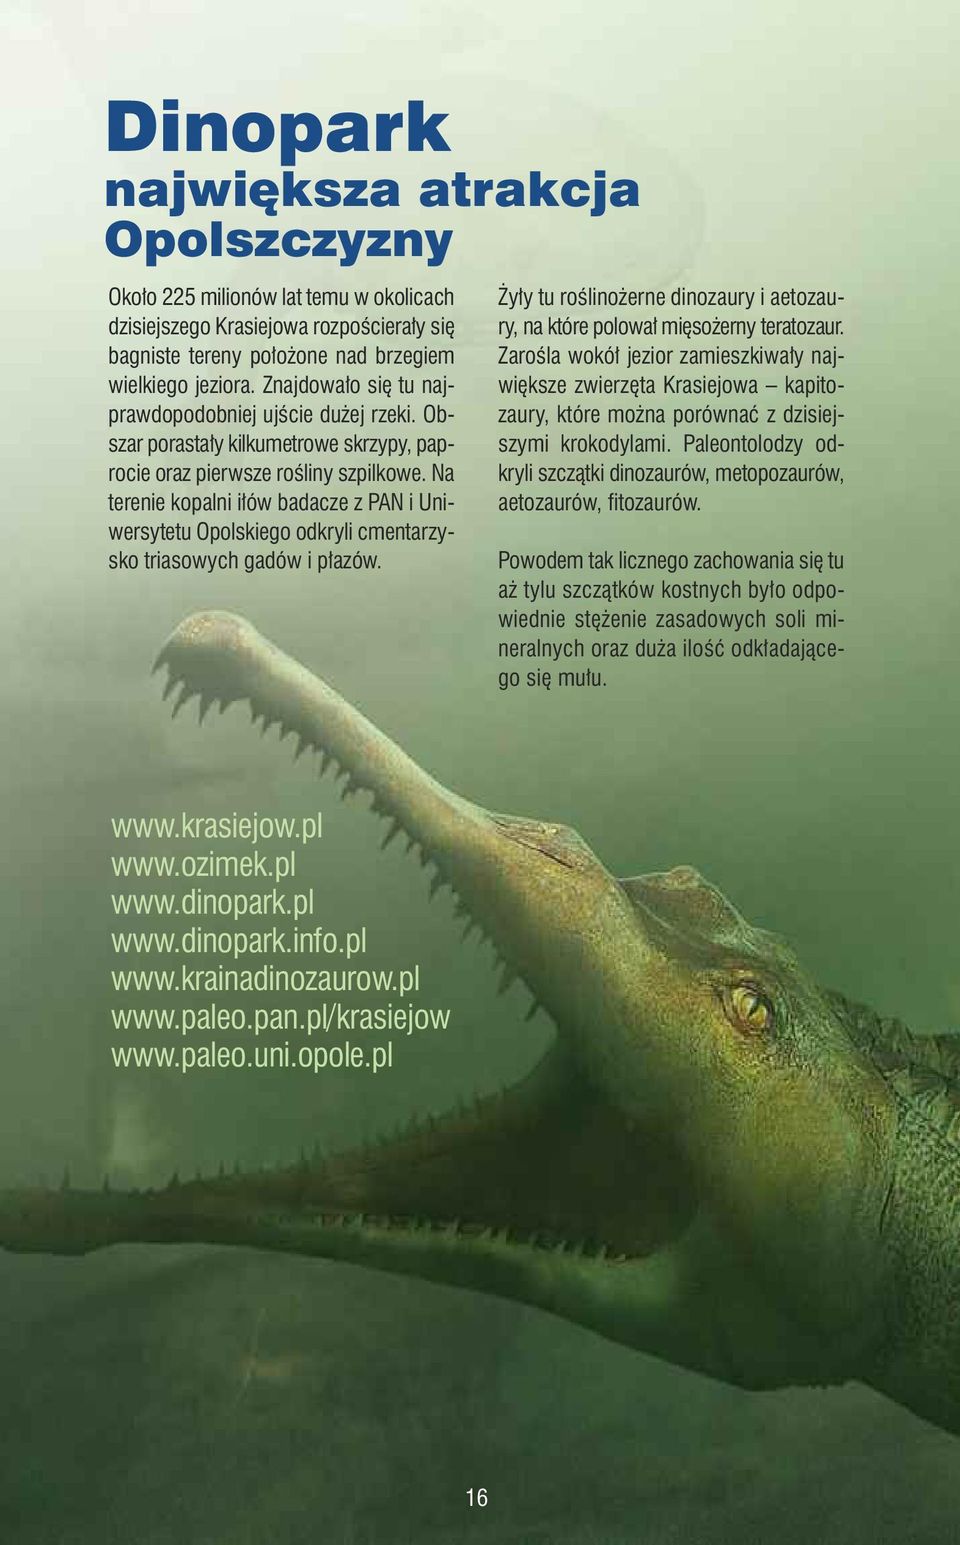 Na terenie kopalni iłów badacze z PAN i Uniwersytetu Opolskiego odkryli cmentarzysko triasowych gadów i płazów. Żyły tu roślinożerne dinozaury i aetozaury, na które polował mięsożerny teratozaur.